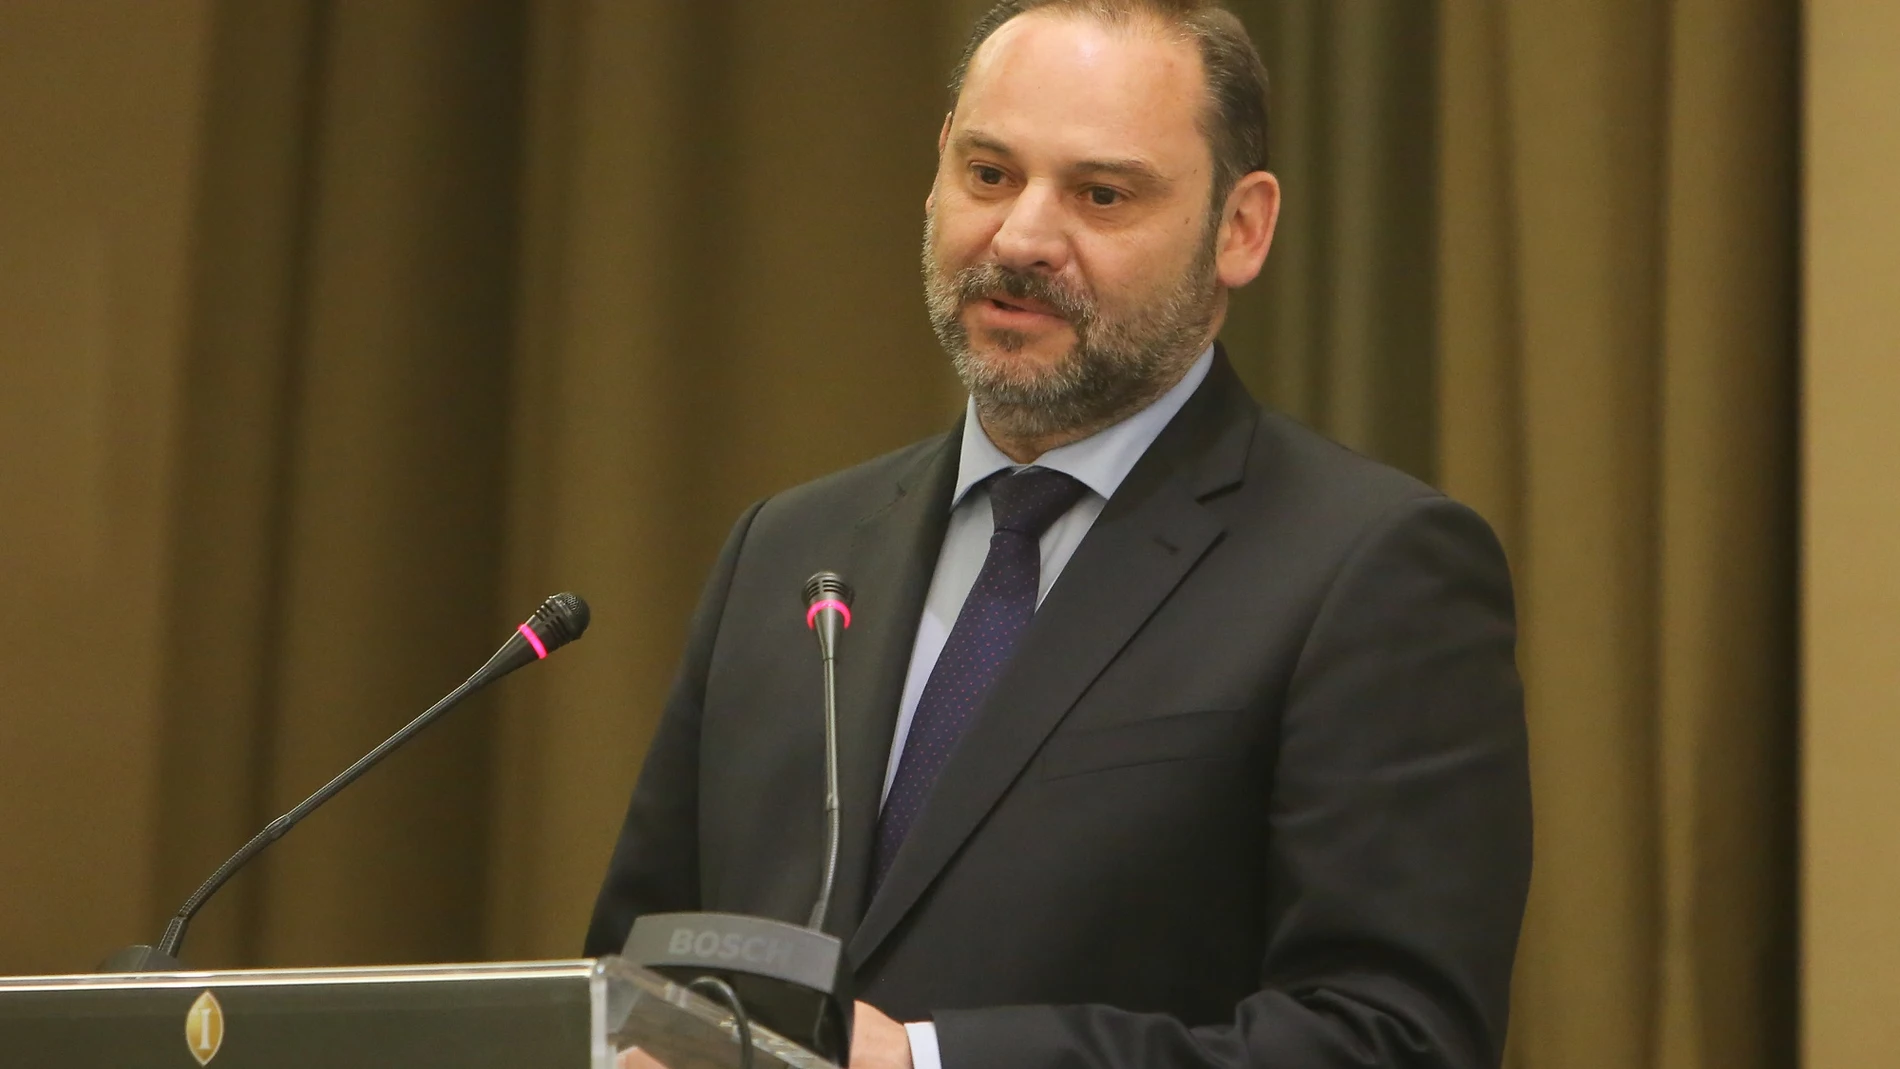 El ministro de Fomento, Transportes y Agenda Urbana, José Luis Ábalos, en una imagen durante su intervención en el acto Distinciones Diario 16, a 9 de abril de 2019